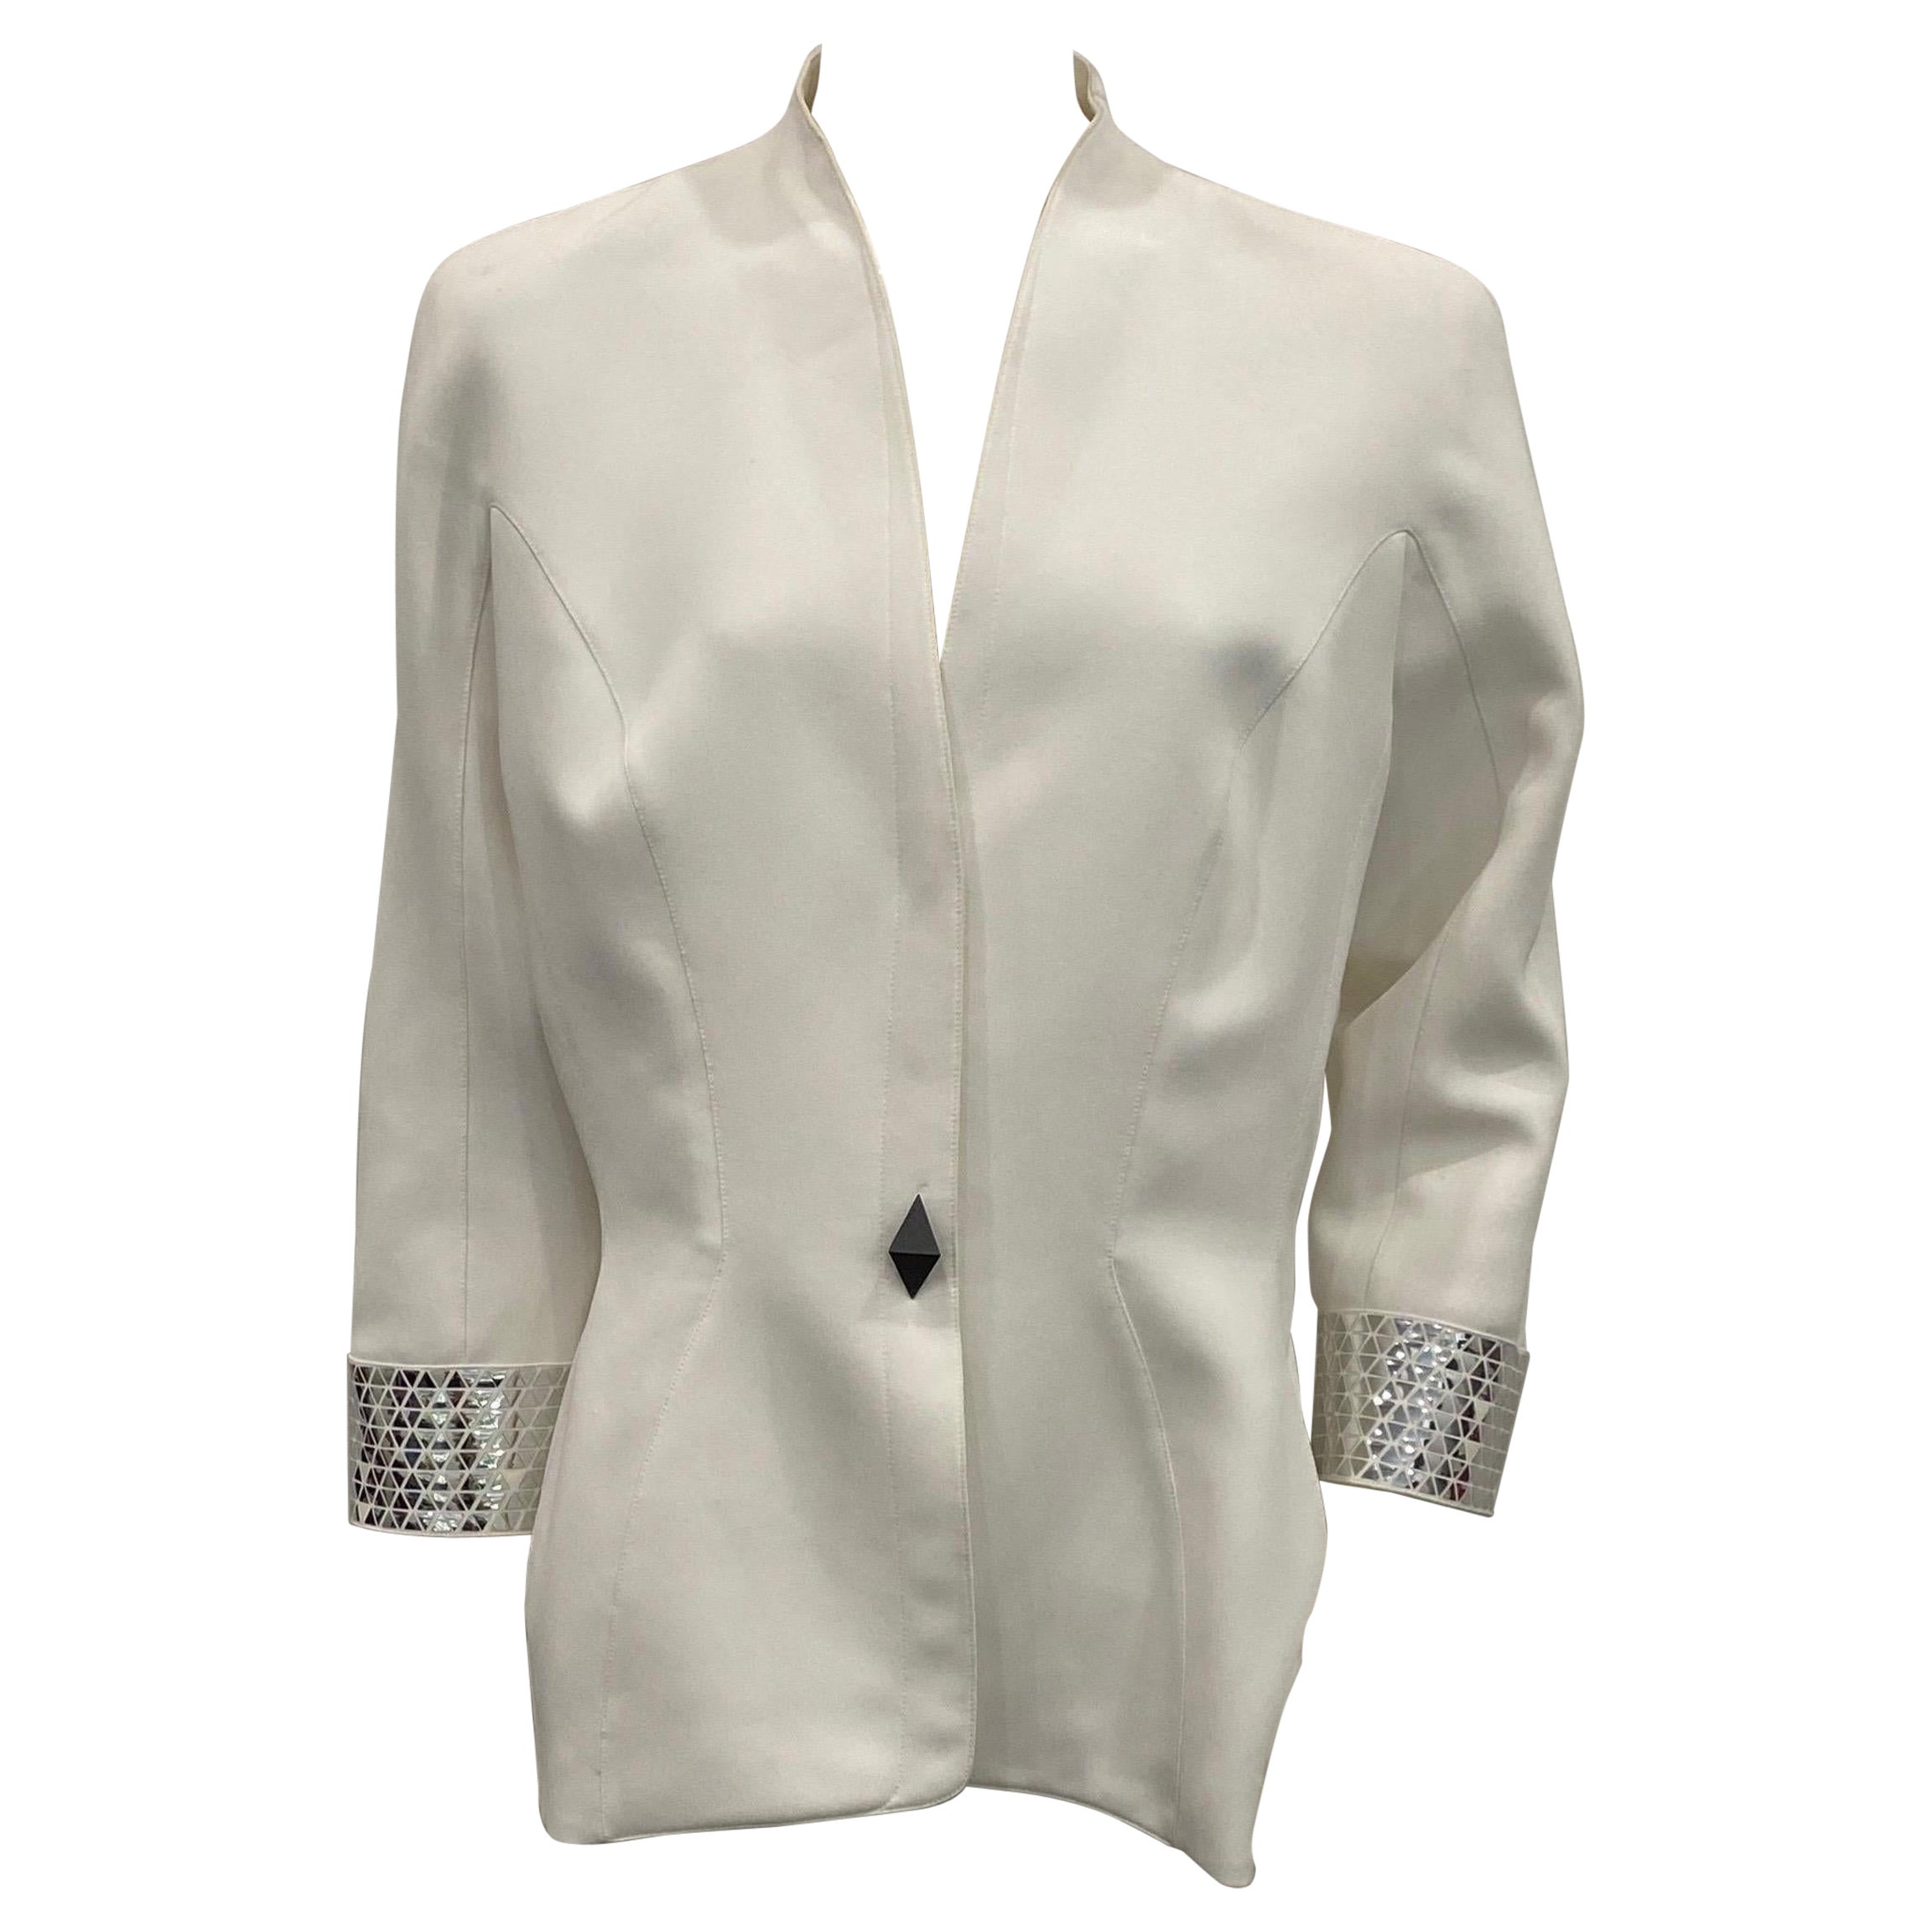 Veste blanche Thierry Mugler Couture des années 1990 avec détails métalliques argentés - Taille 46 en vente